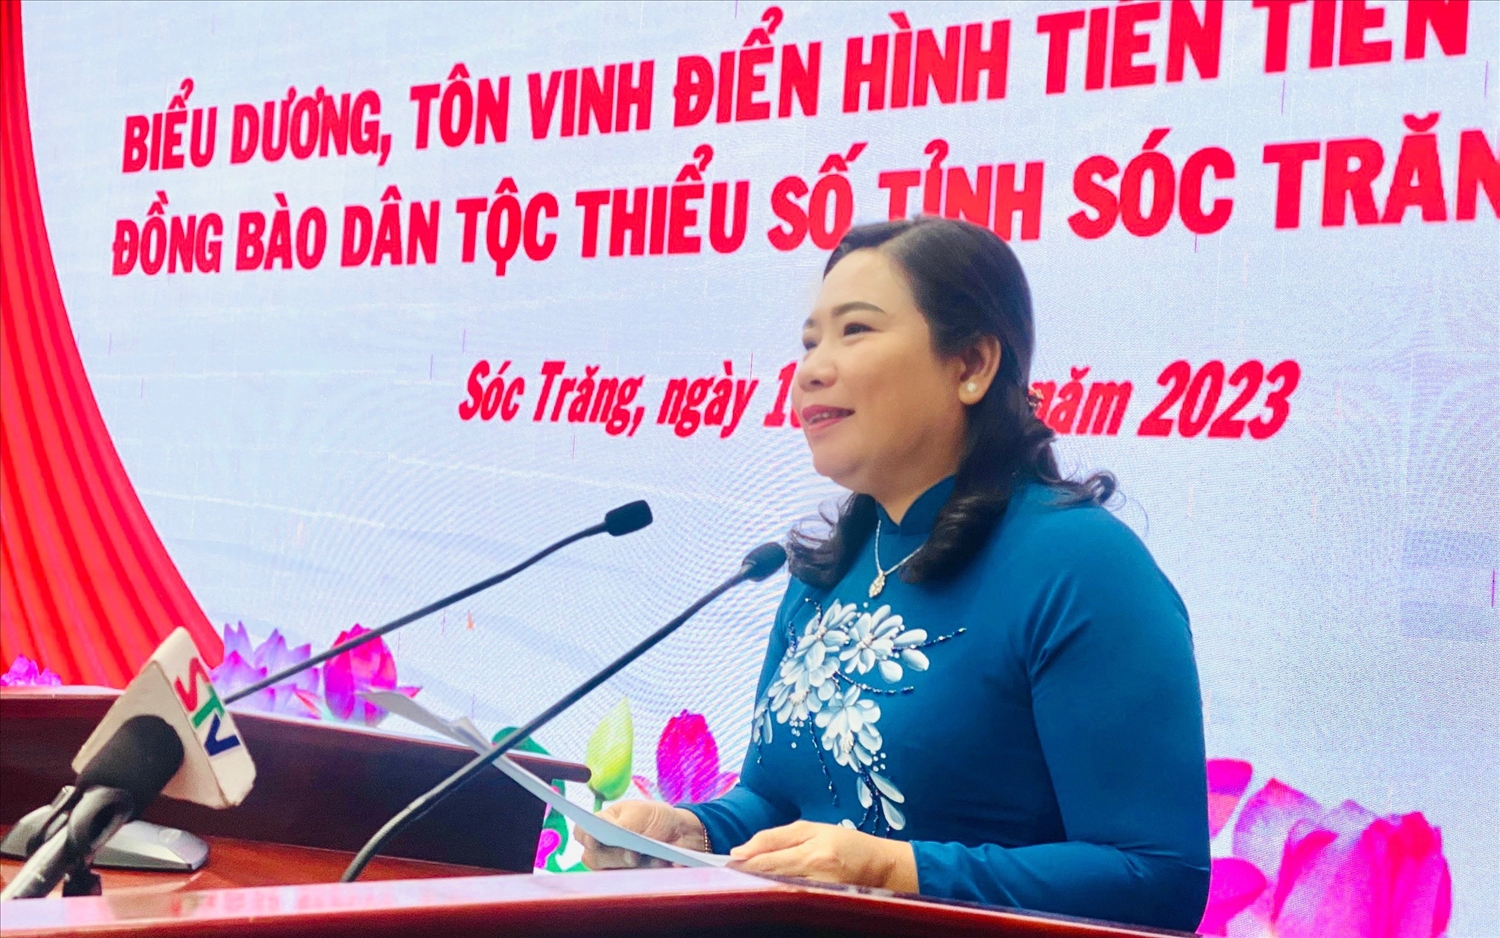 Bà Hồ Thị Cẩm Đào - Phó Bí thư Thường trực, Chủ tịch HĐND tỉnh Sóc Trăng phát biểu chúc mừng tại buổi họp mặt